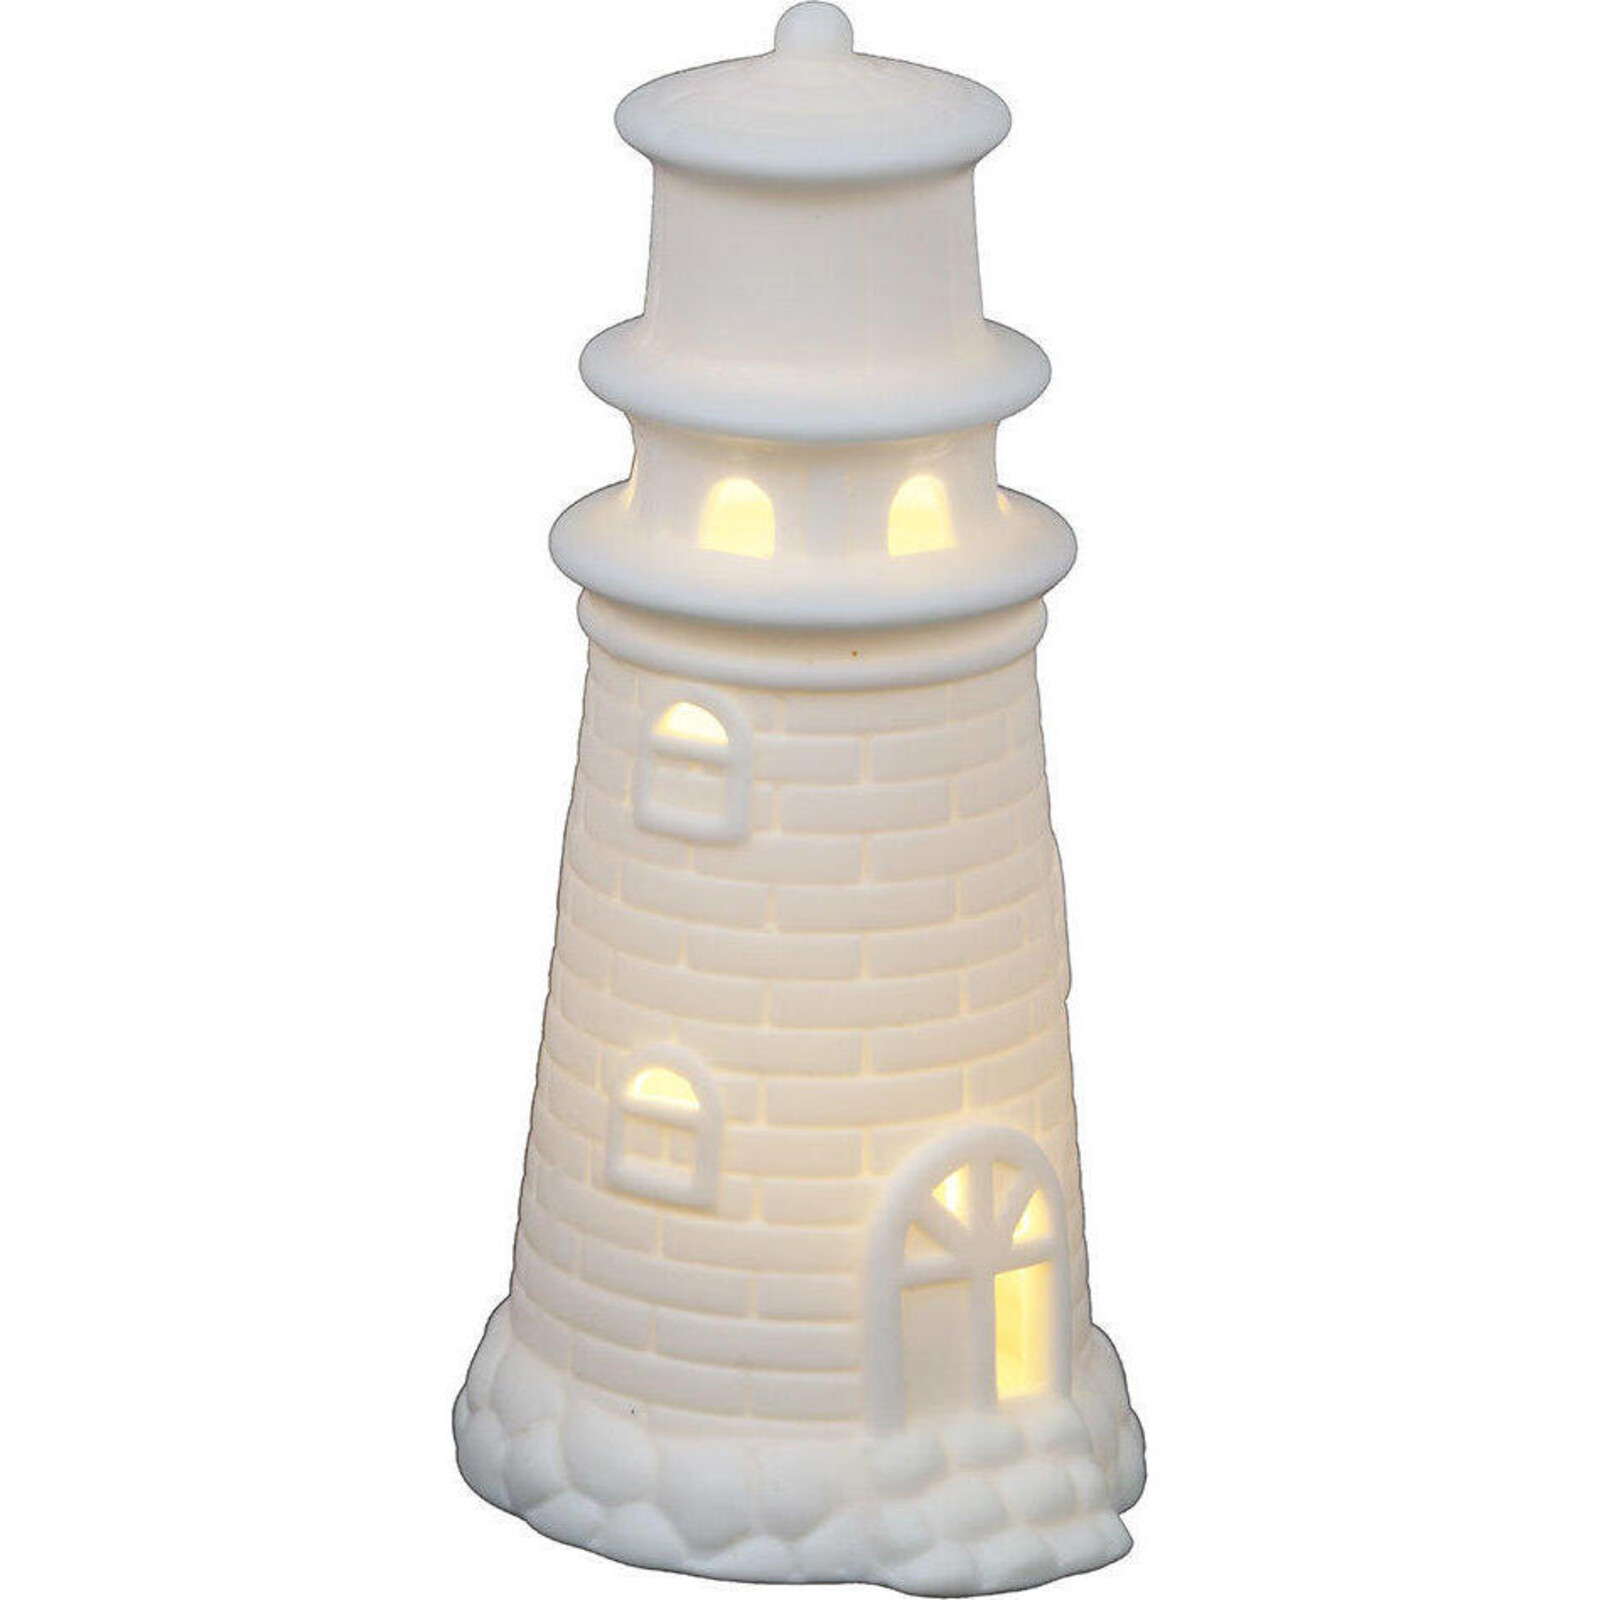 LED Lighthouse Portland